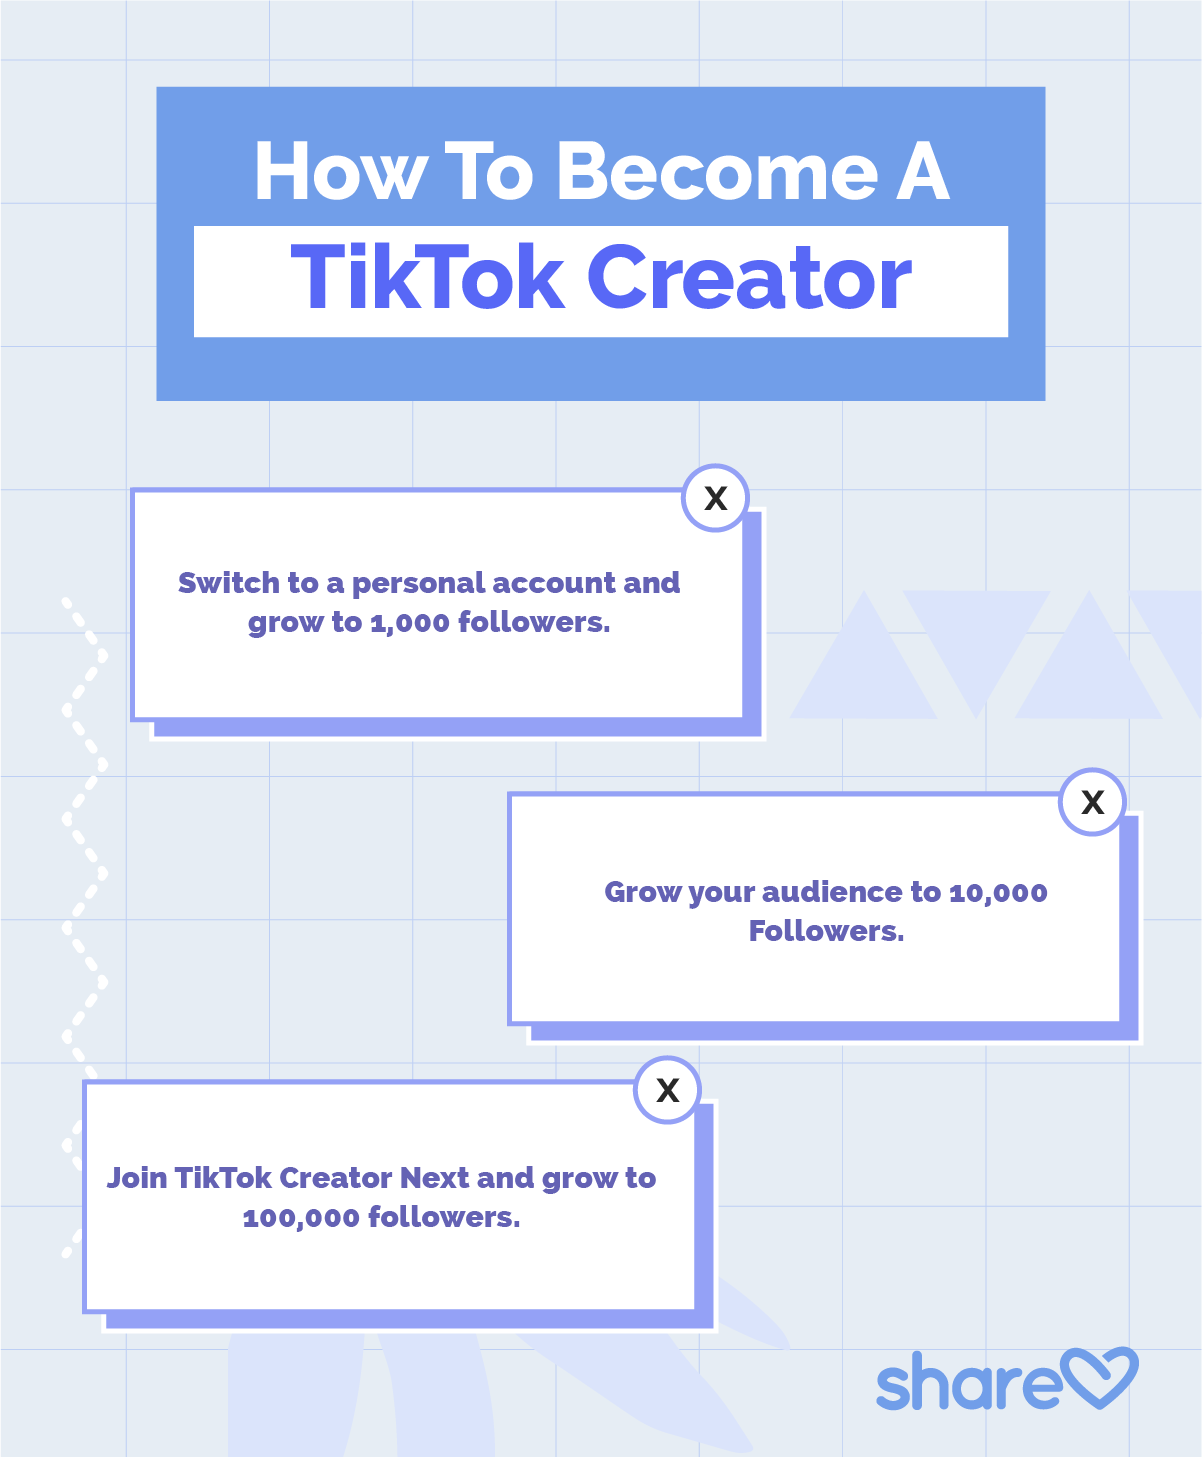 How To Become A TikTok Creator